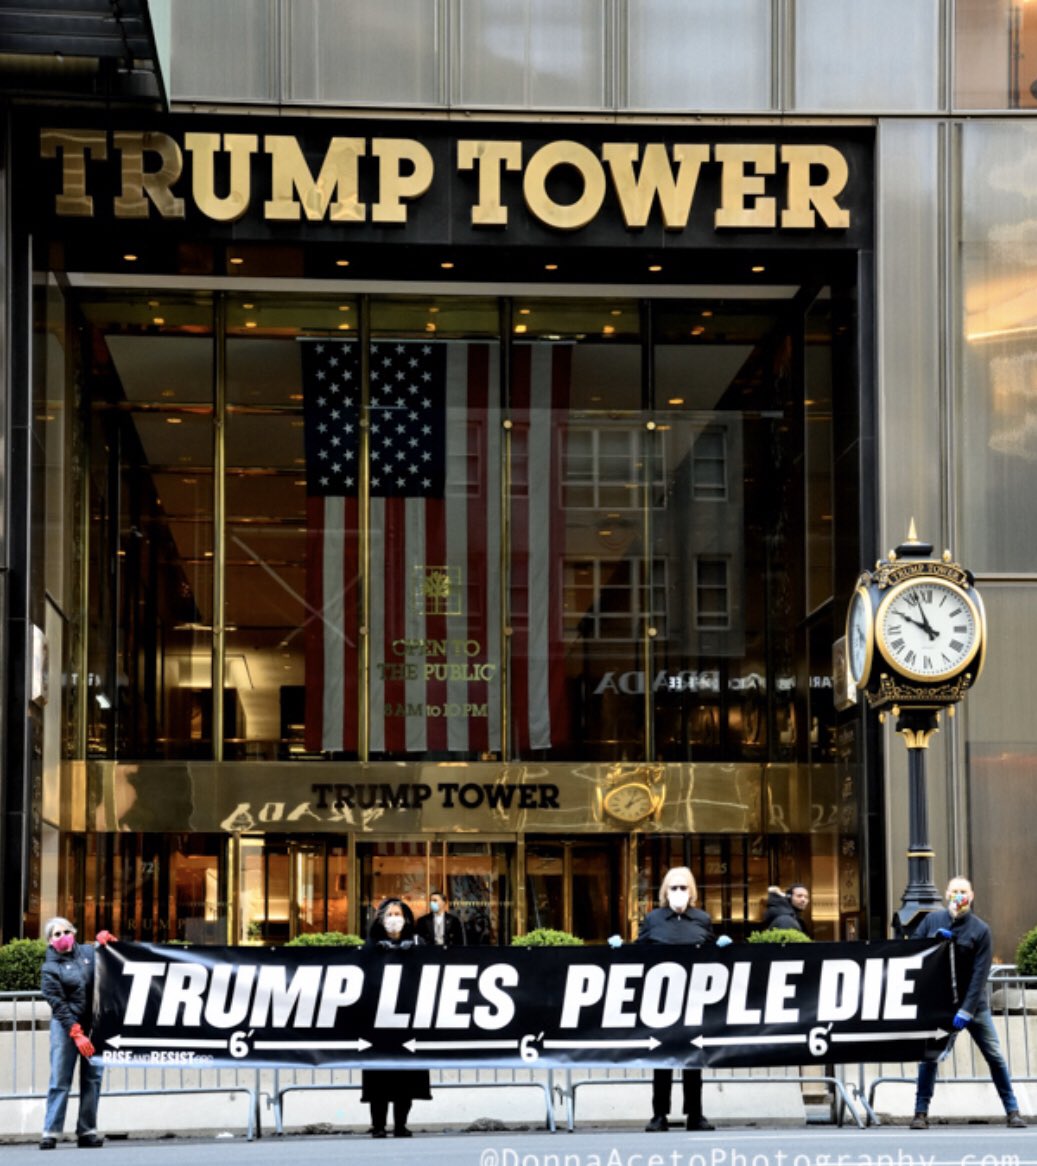 Trump Lies People Die